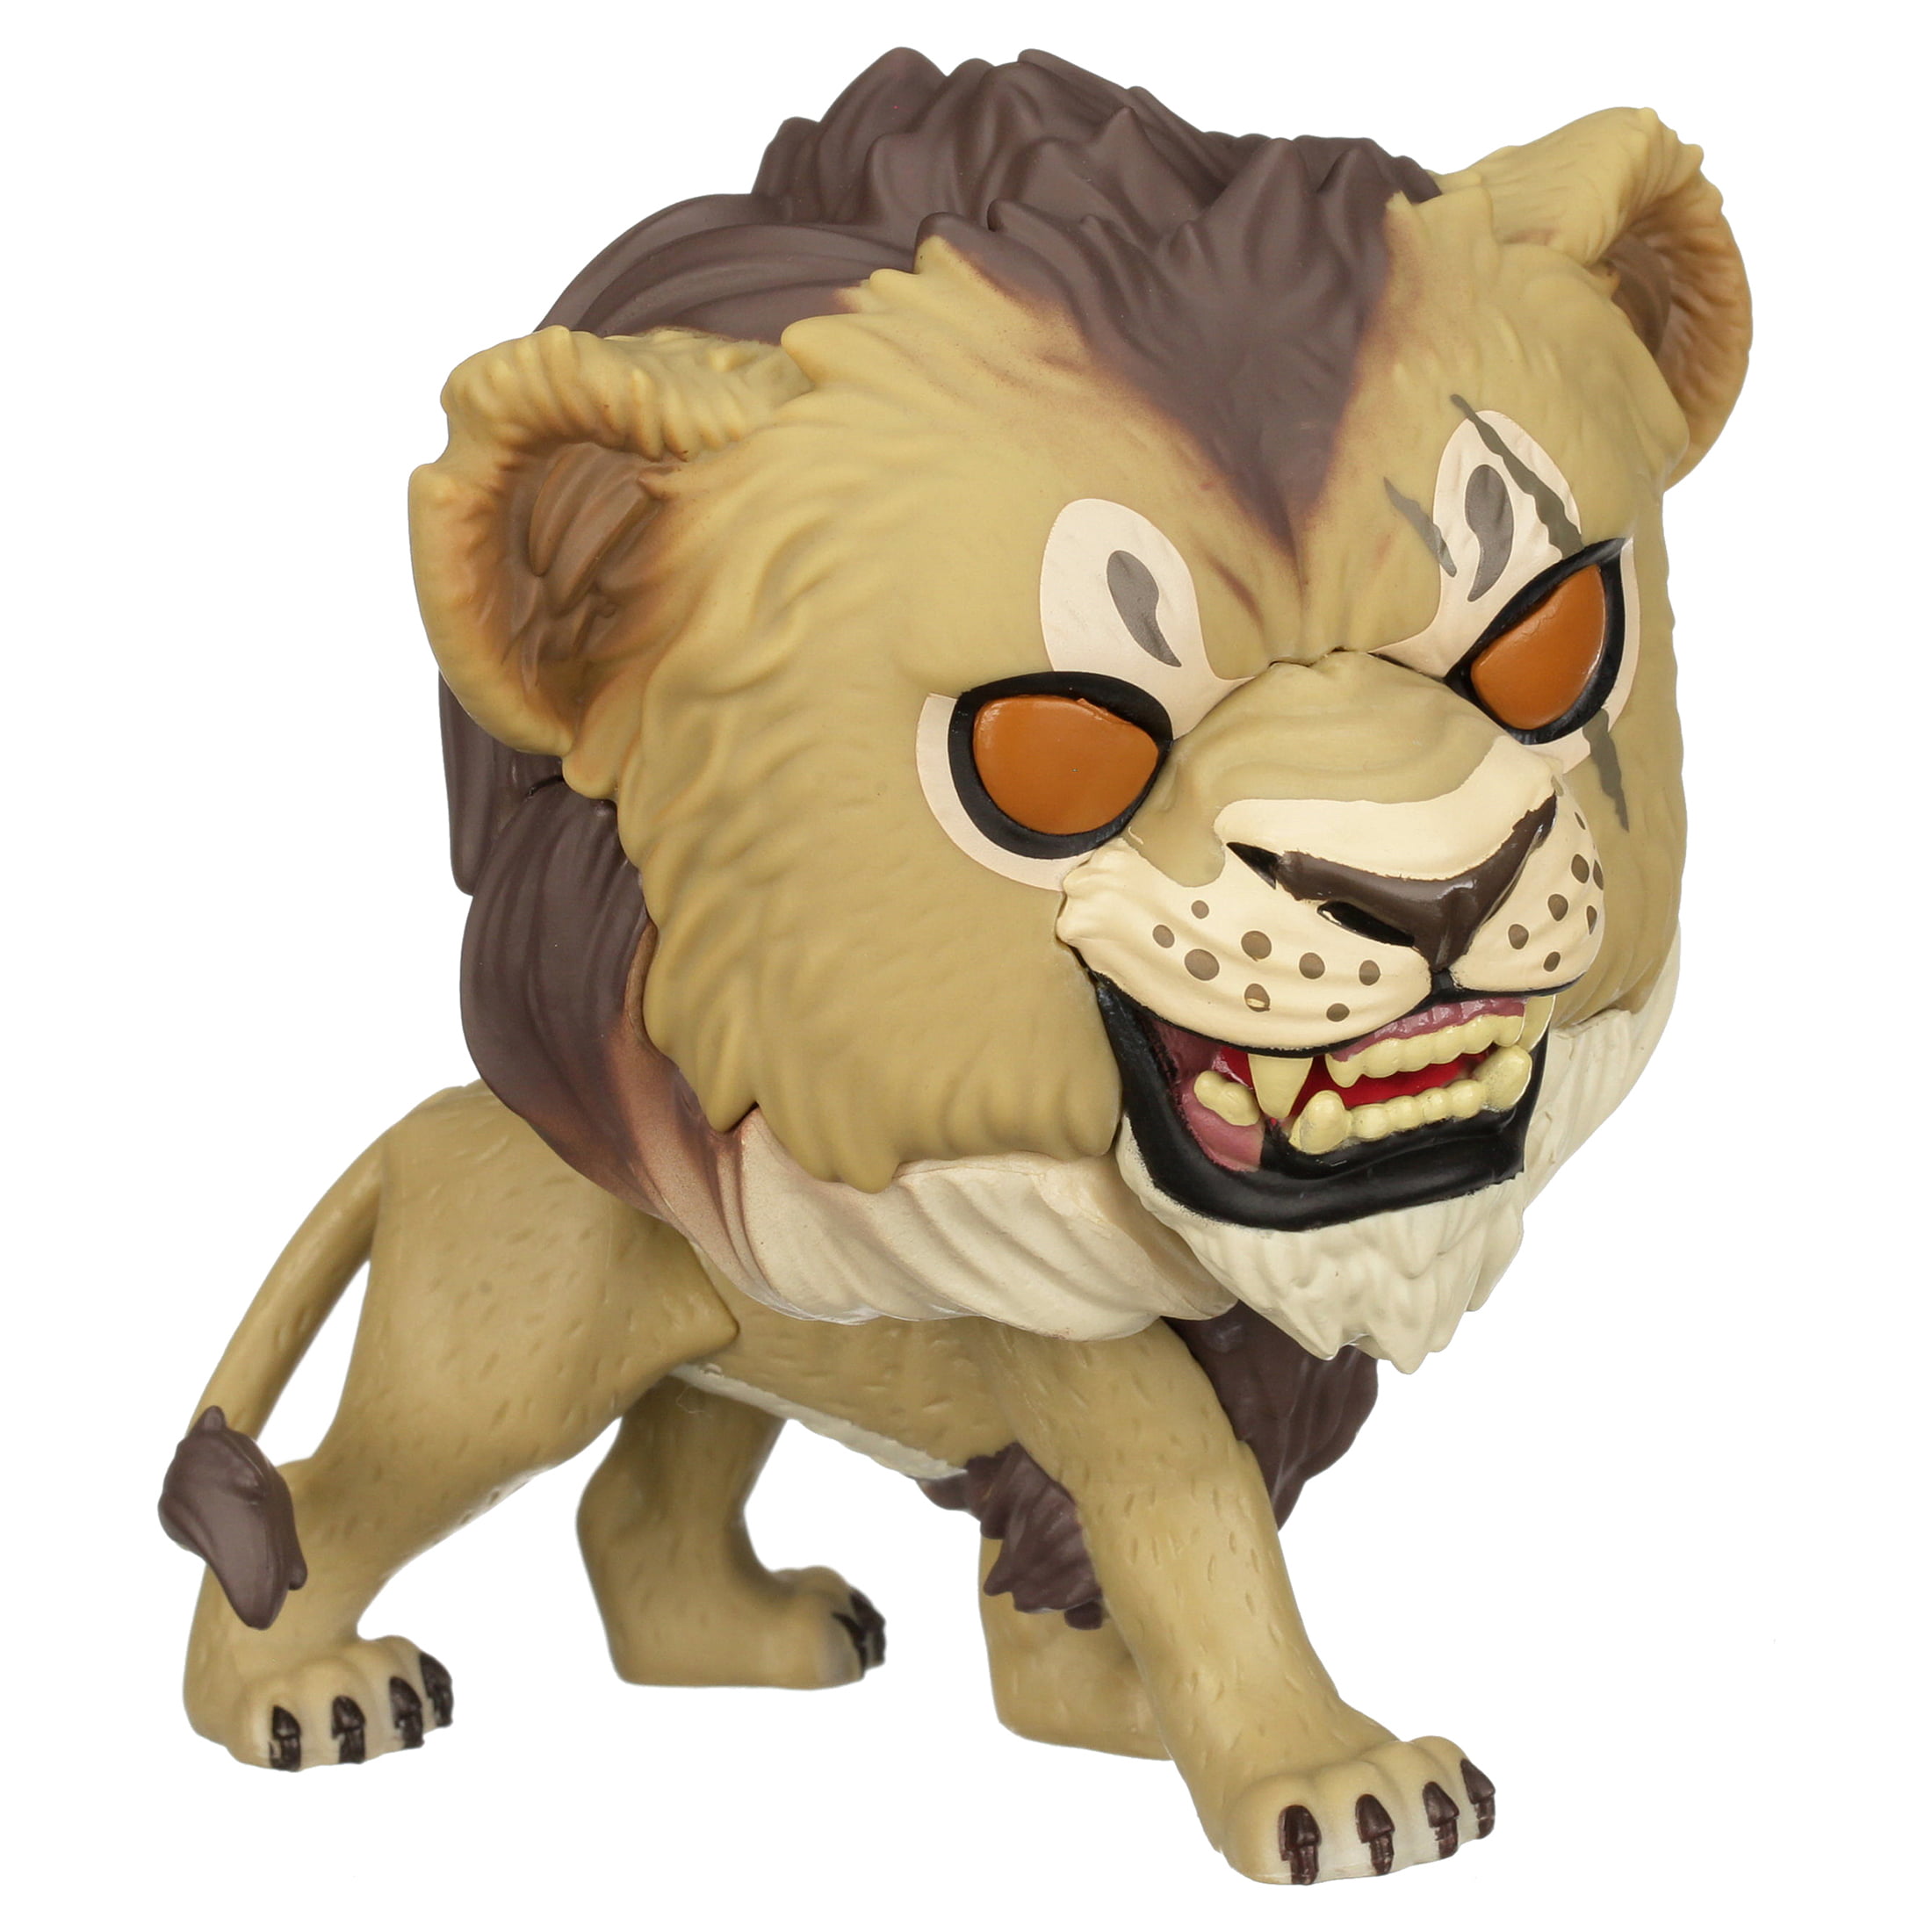 Figurine Funko POP Scar (548) Le Roi Lion Live Action